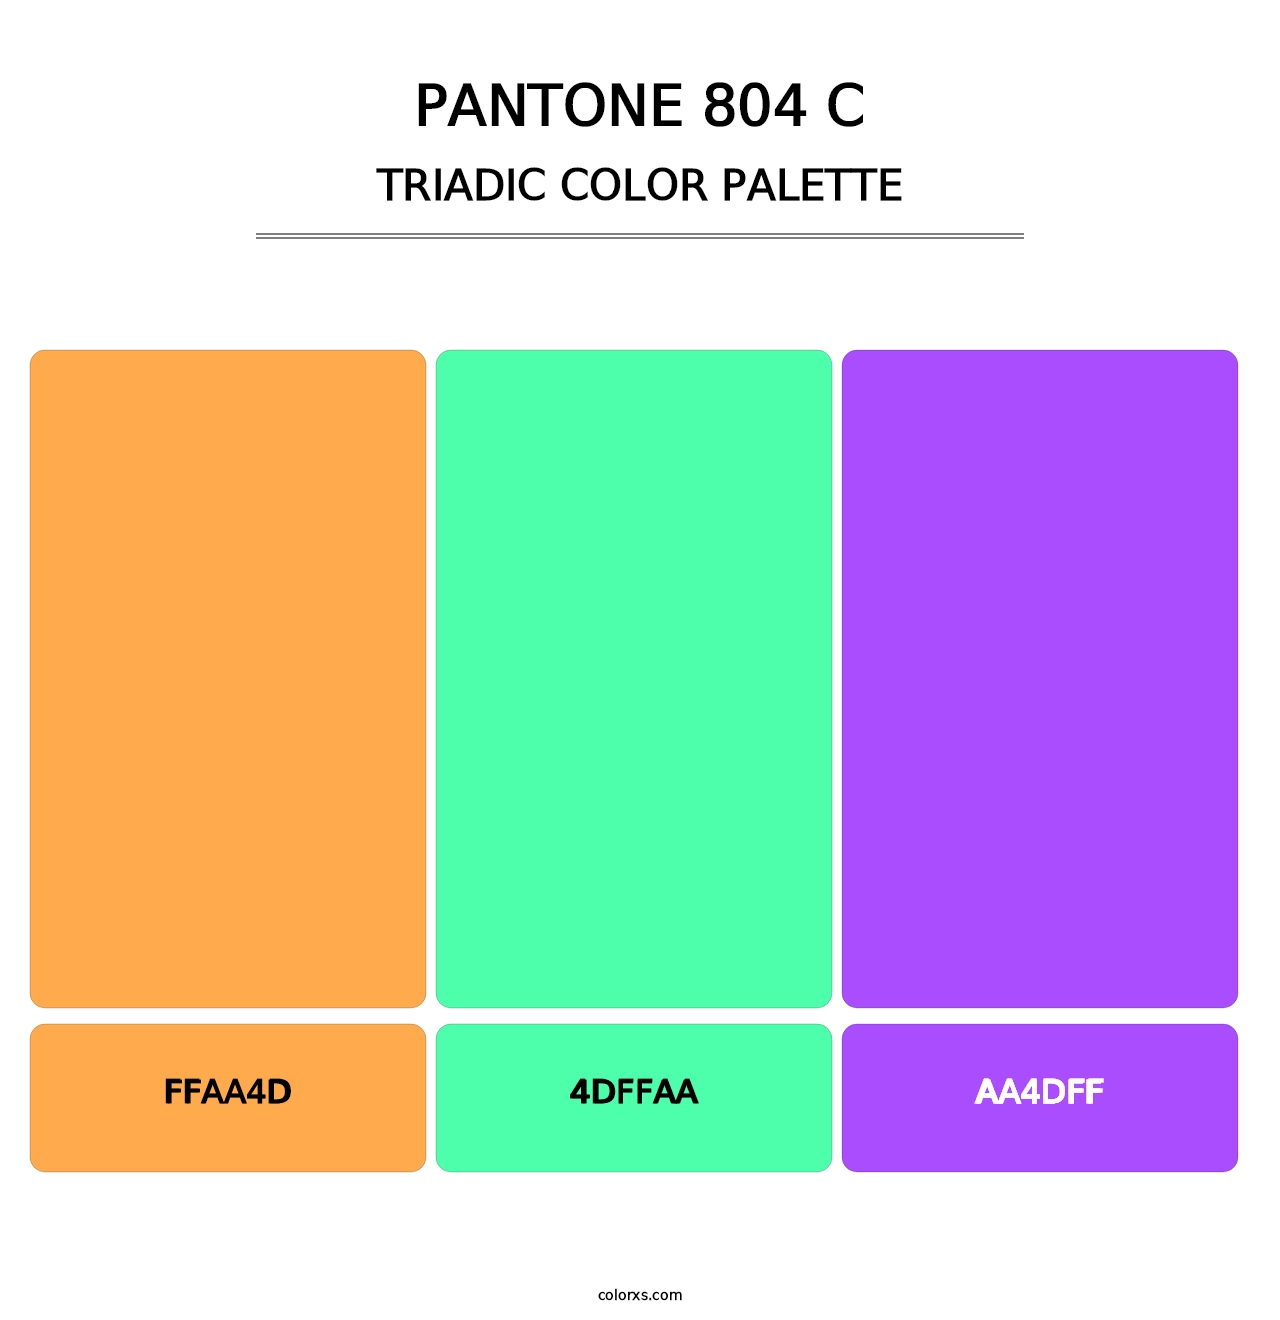 PANTONE 804 C - Triadic Color Palette